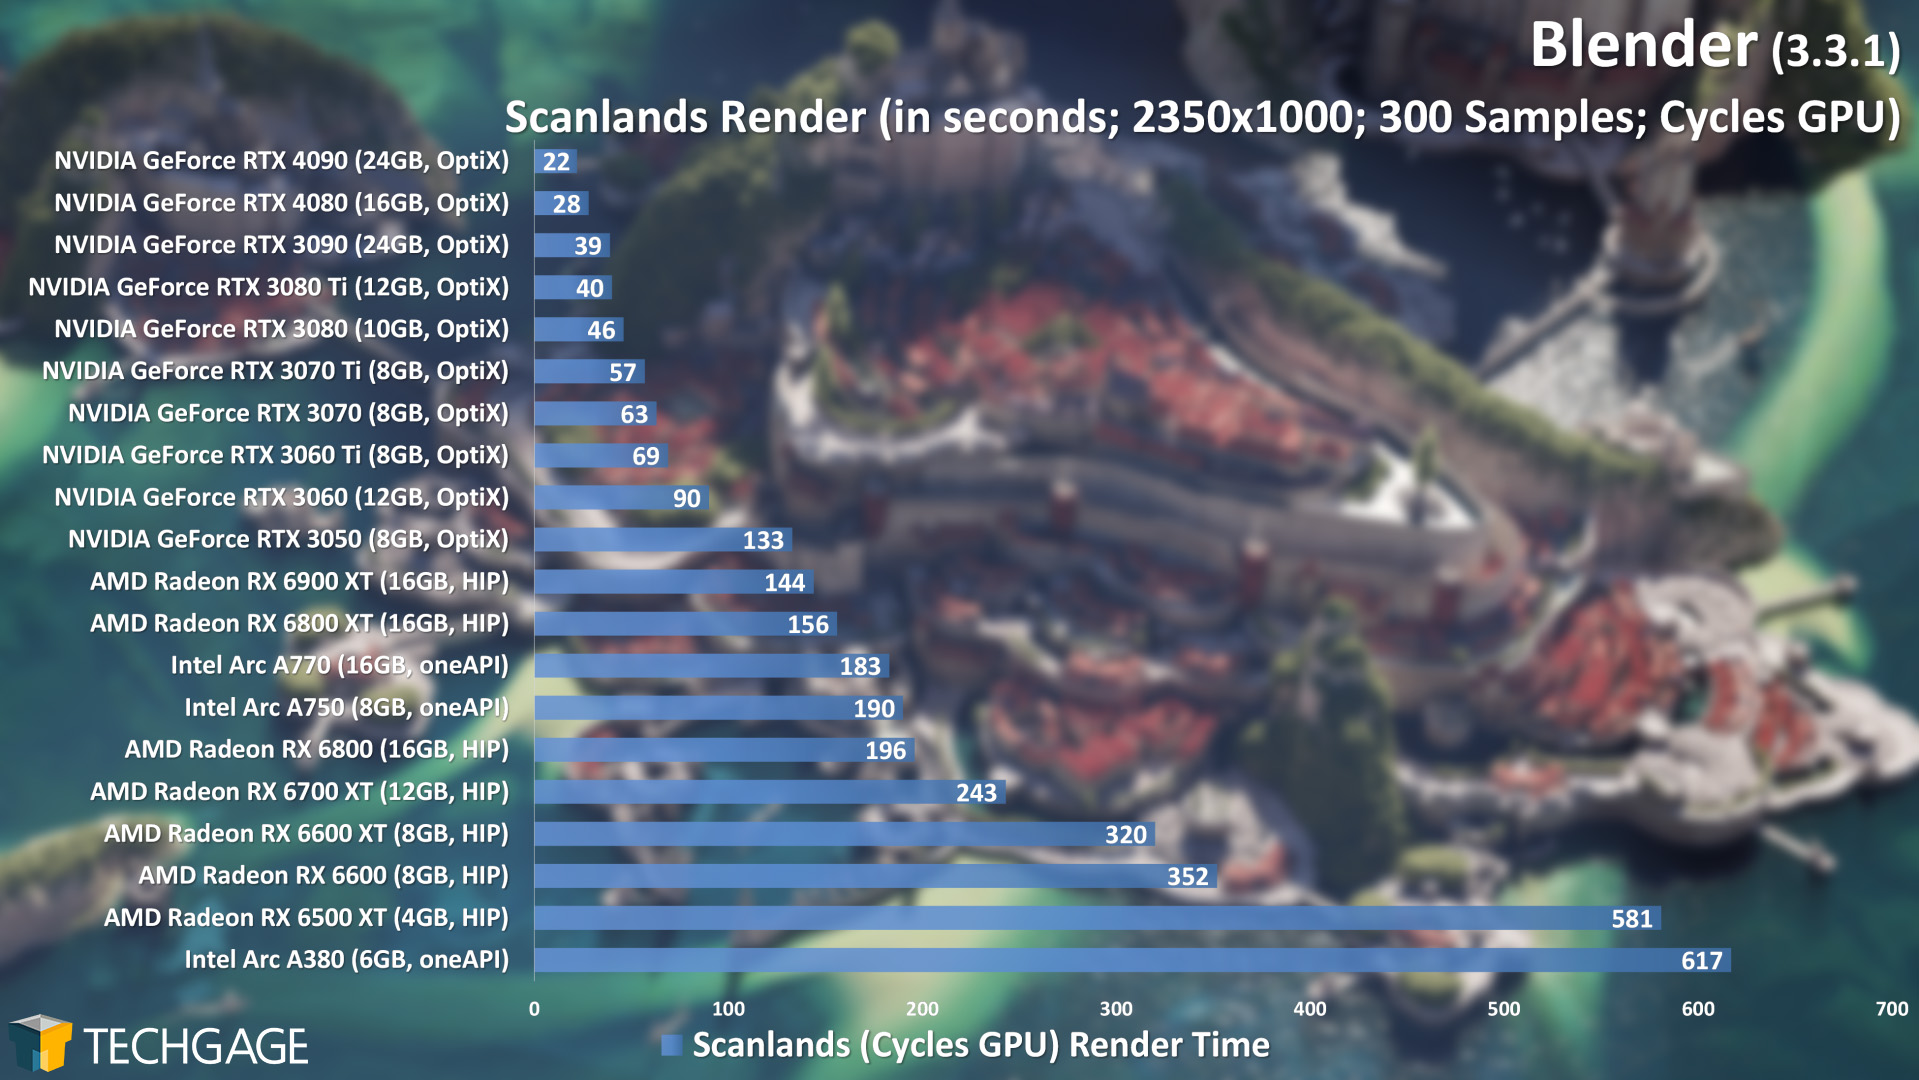 Blender 3.3 - Cycles GPU Render Performance (Scanlands) (Updated)